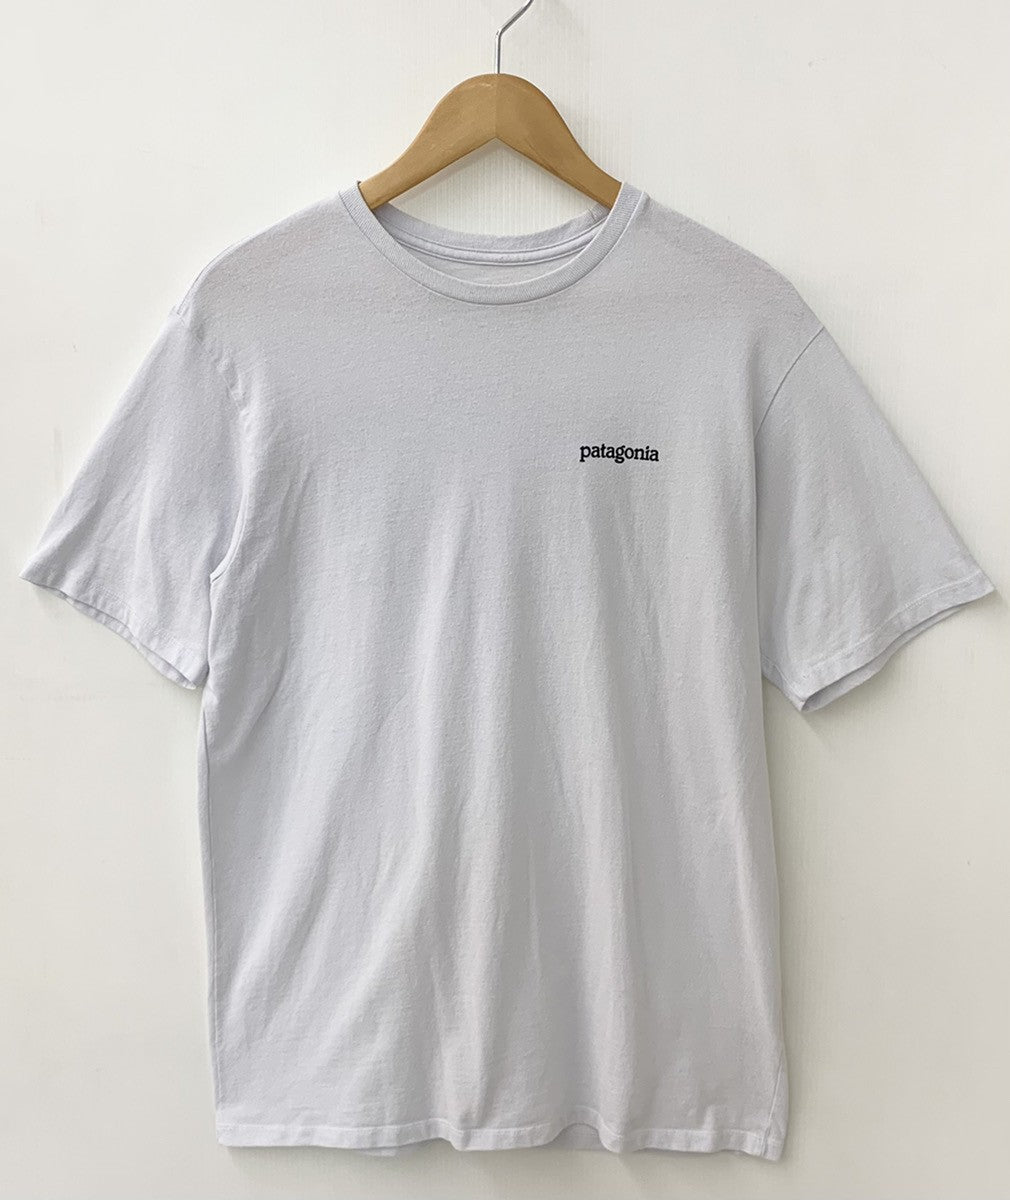 パタゴニア PATAGONIA バックロゴ 背面 Tee STY38501SP20 Tシャツ プリント ホワイト Sサイズ 201MT-345 |  古着通販のドンドンサガール